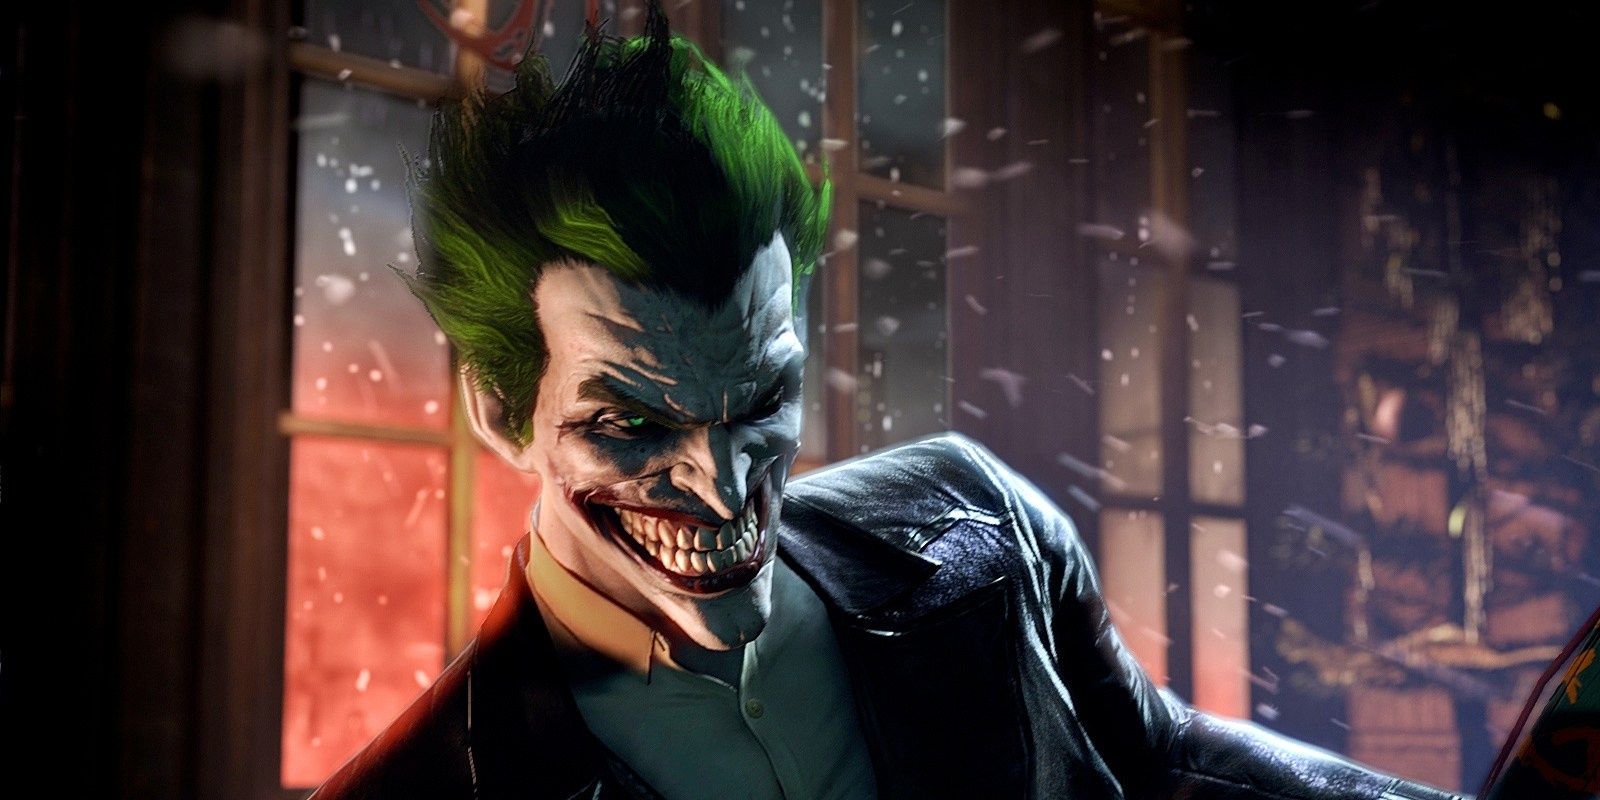 Troy Baker voices the Joker in Arkham Origins